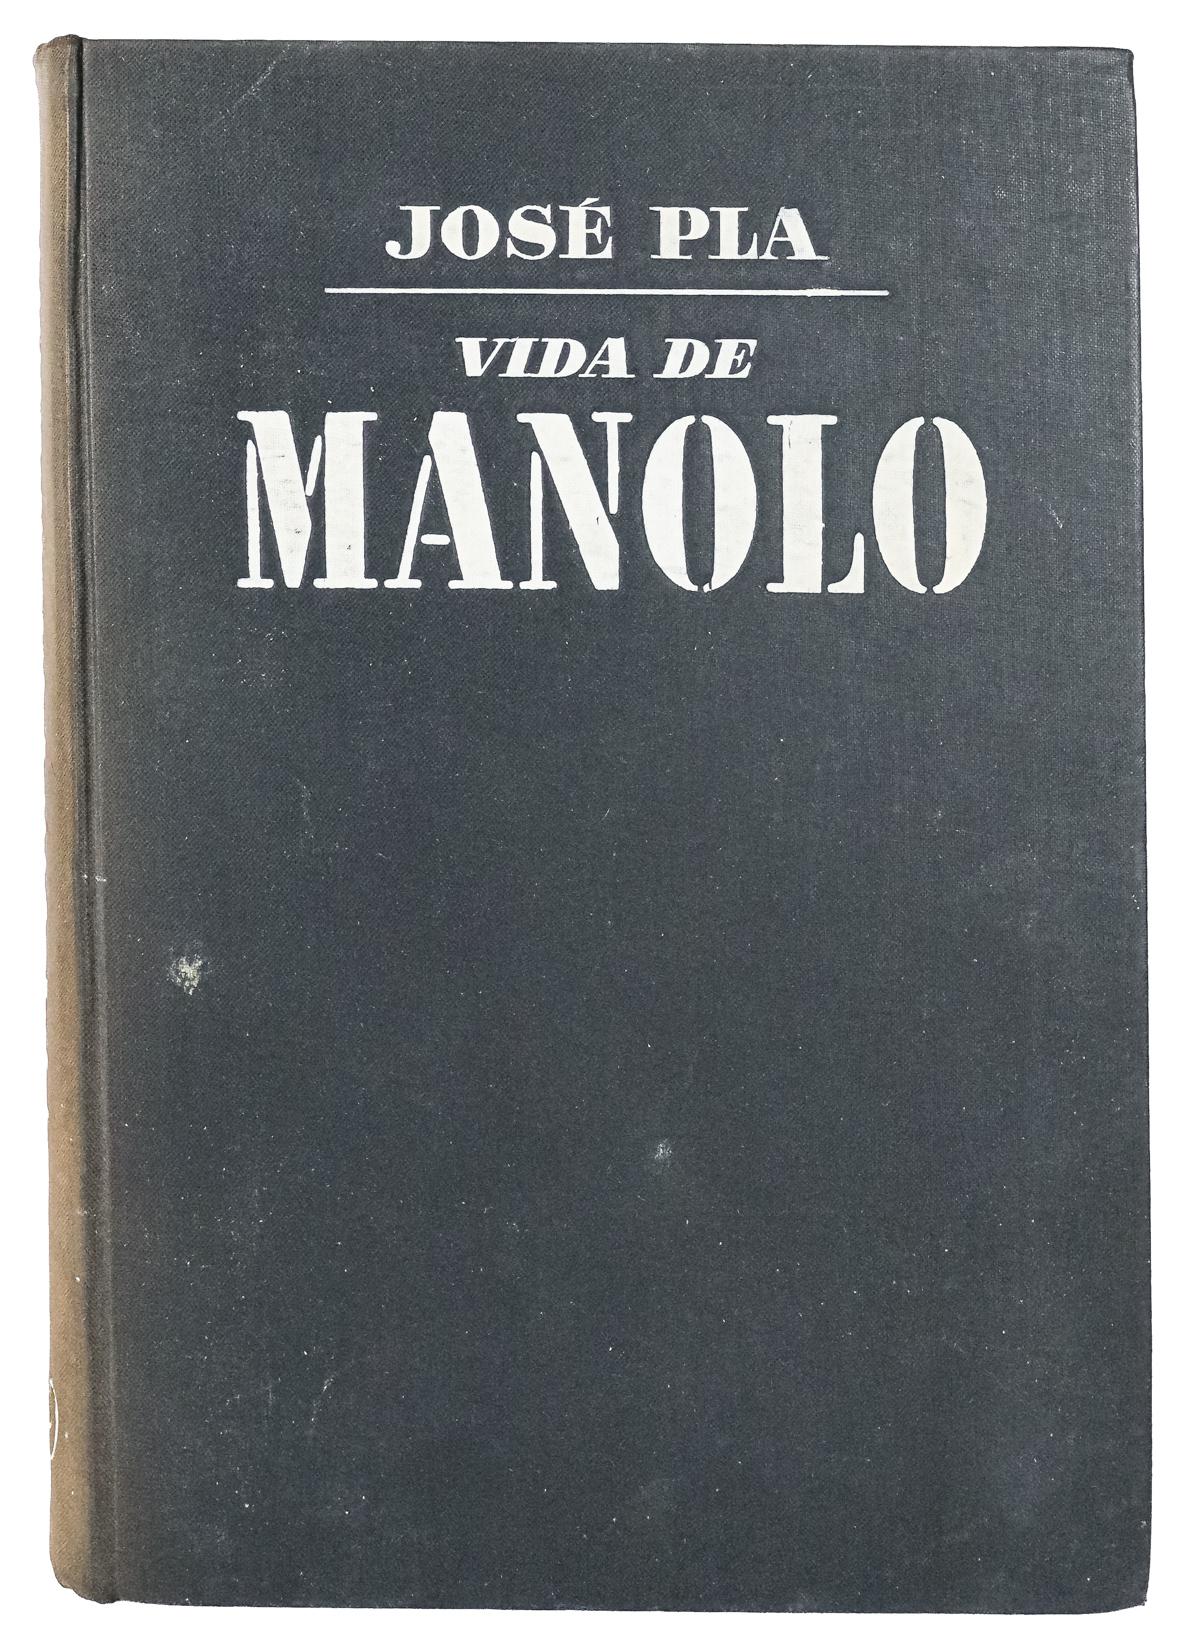 "VIDA DE MANOLO" 